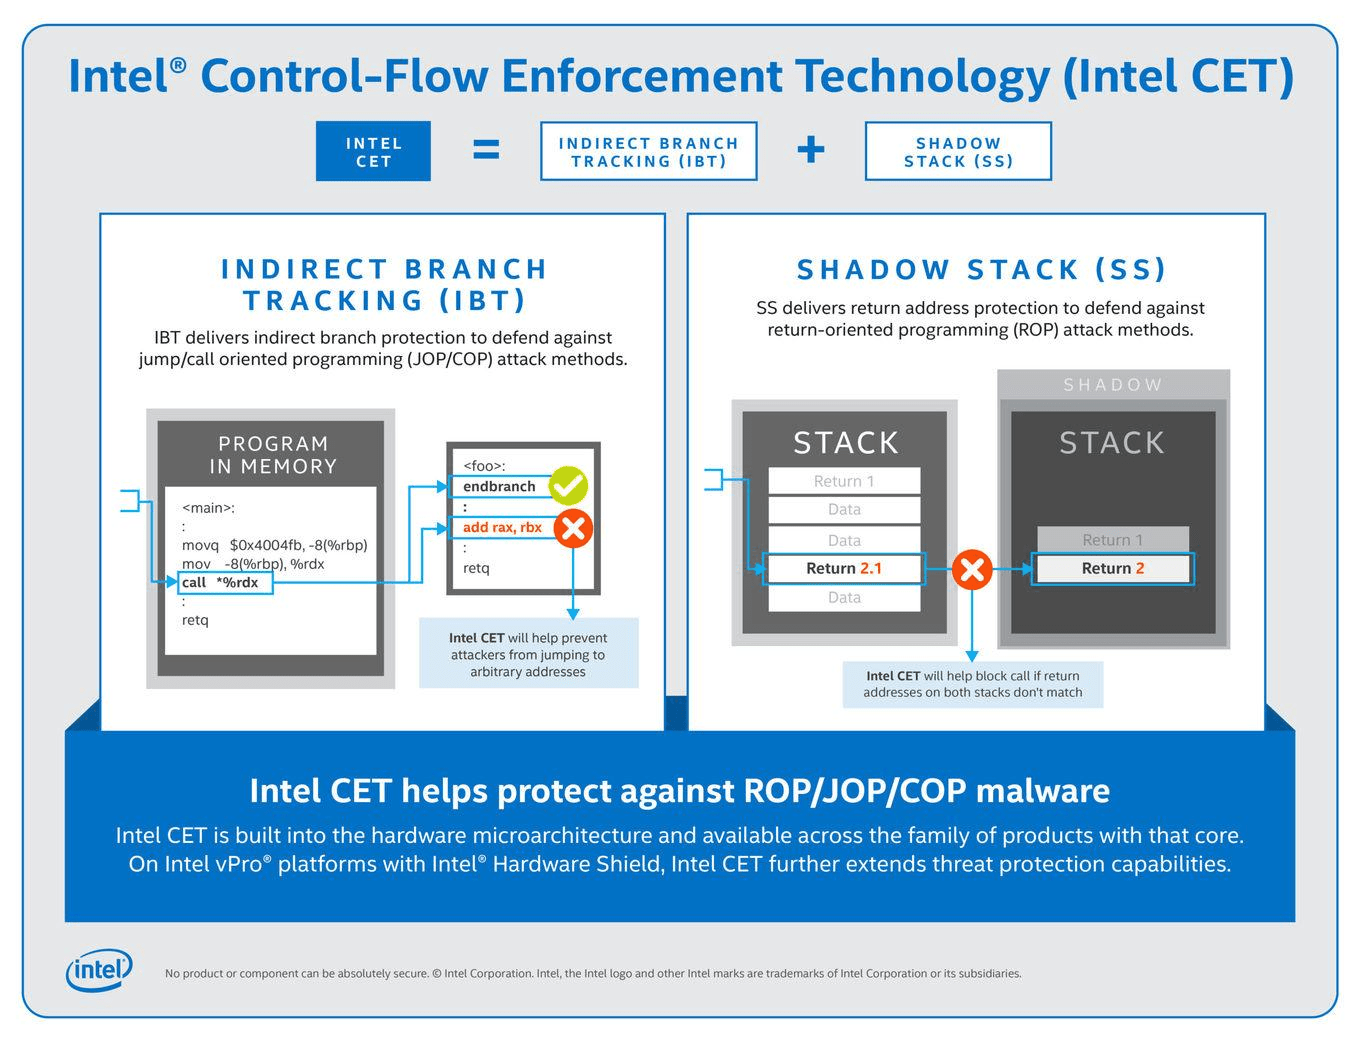 Intel Control-Flow Enforcement Technology (CET)